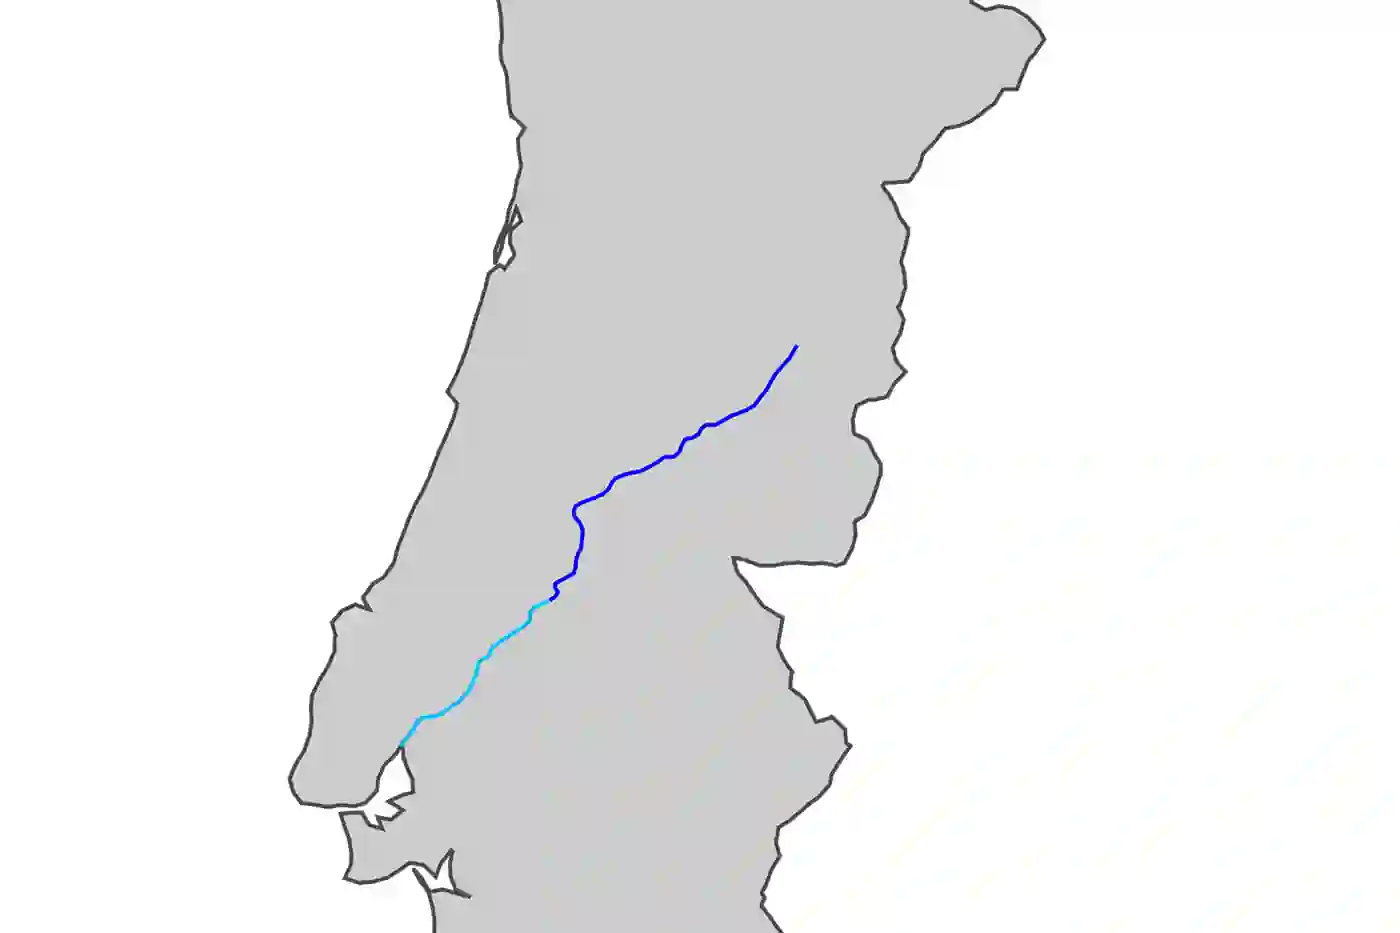 Rio Zêzere também tem nascente na Serra da Estrela